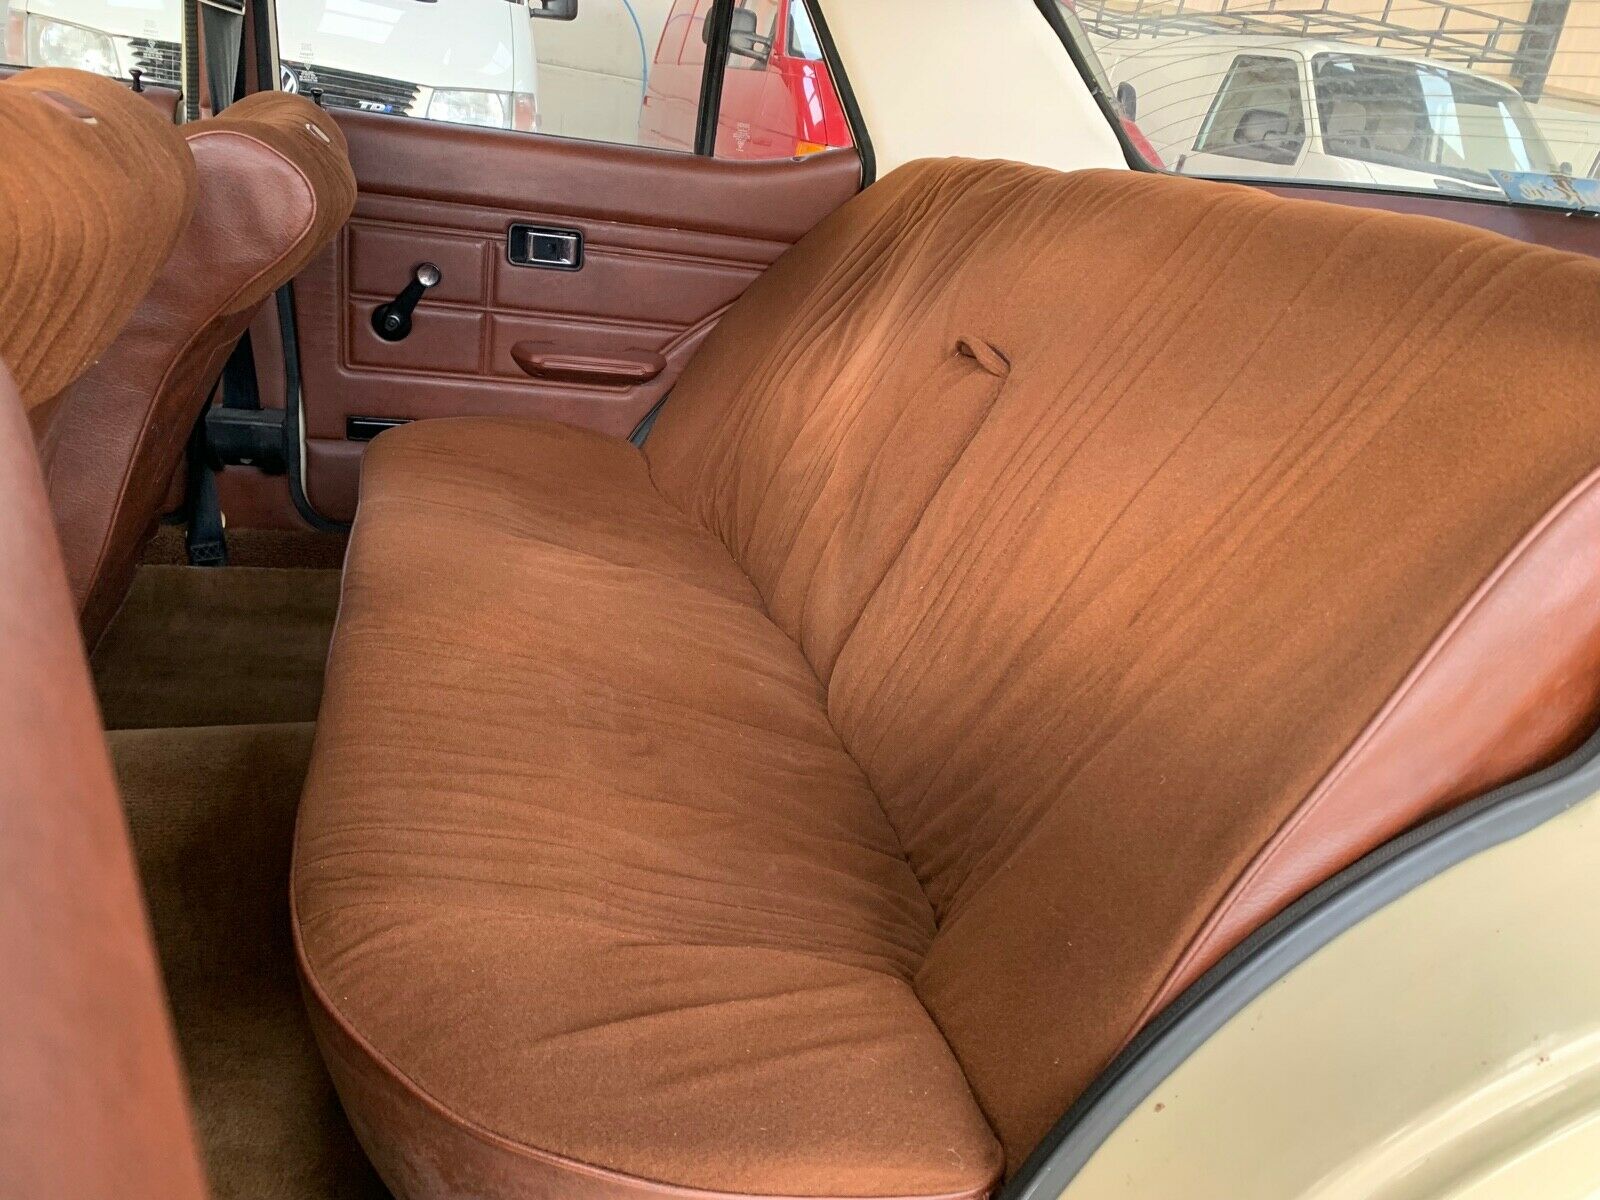 1980 Morris Marina rear seats